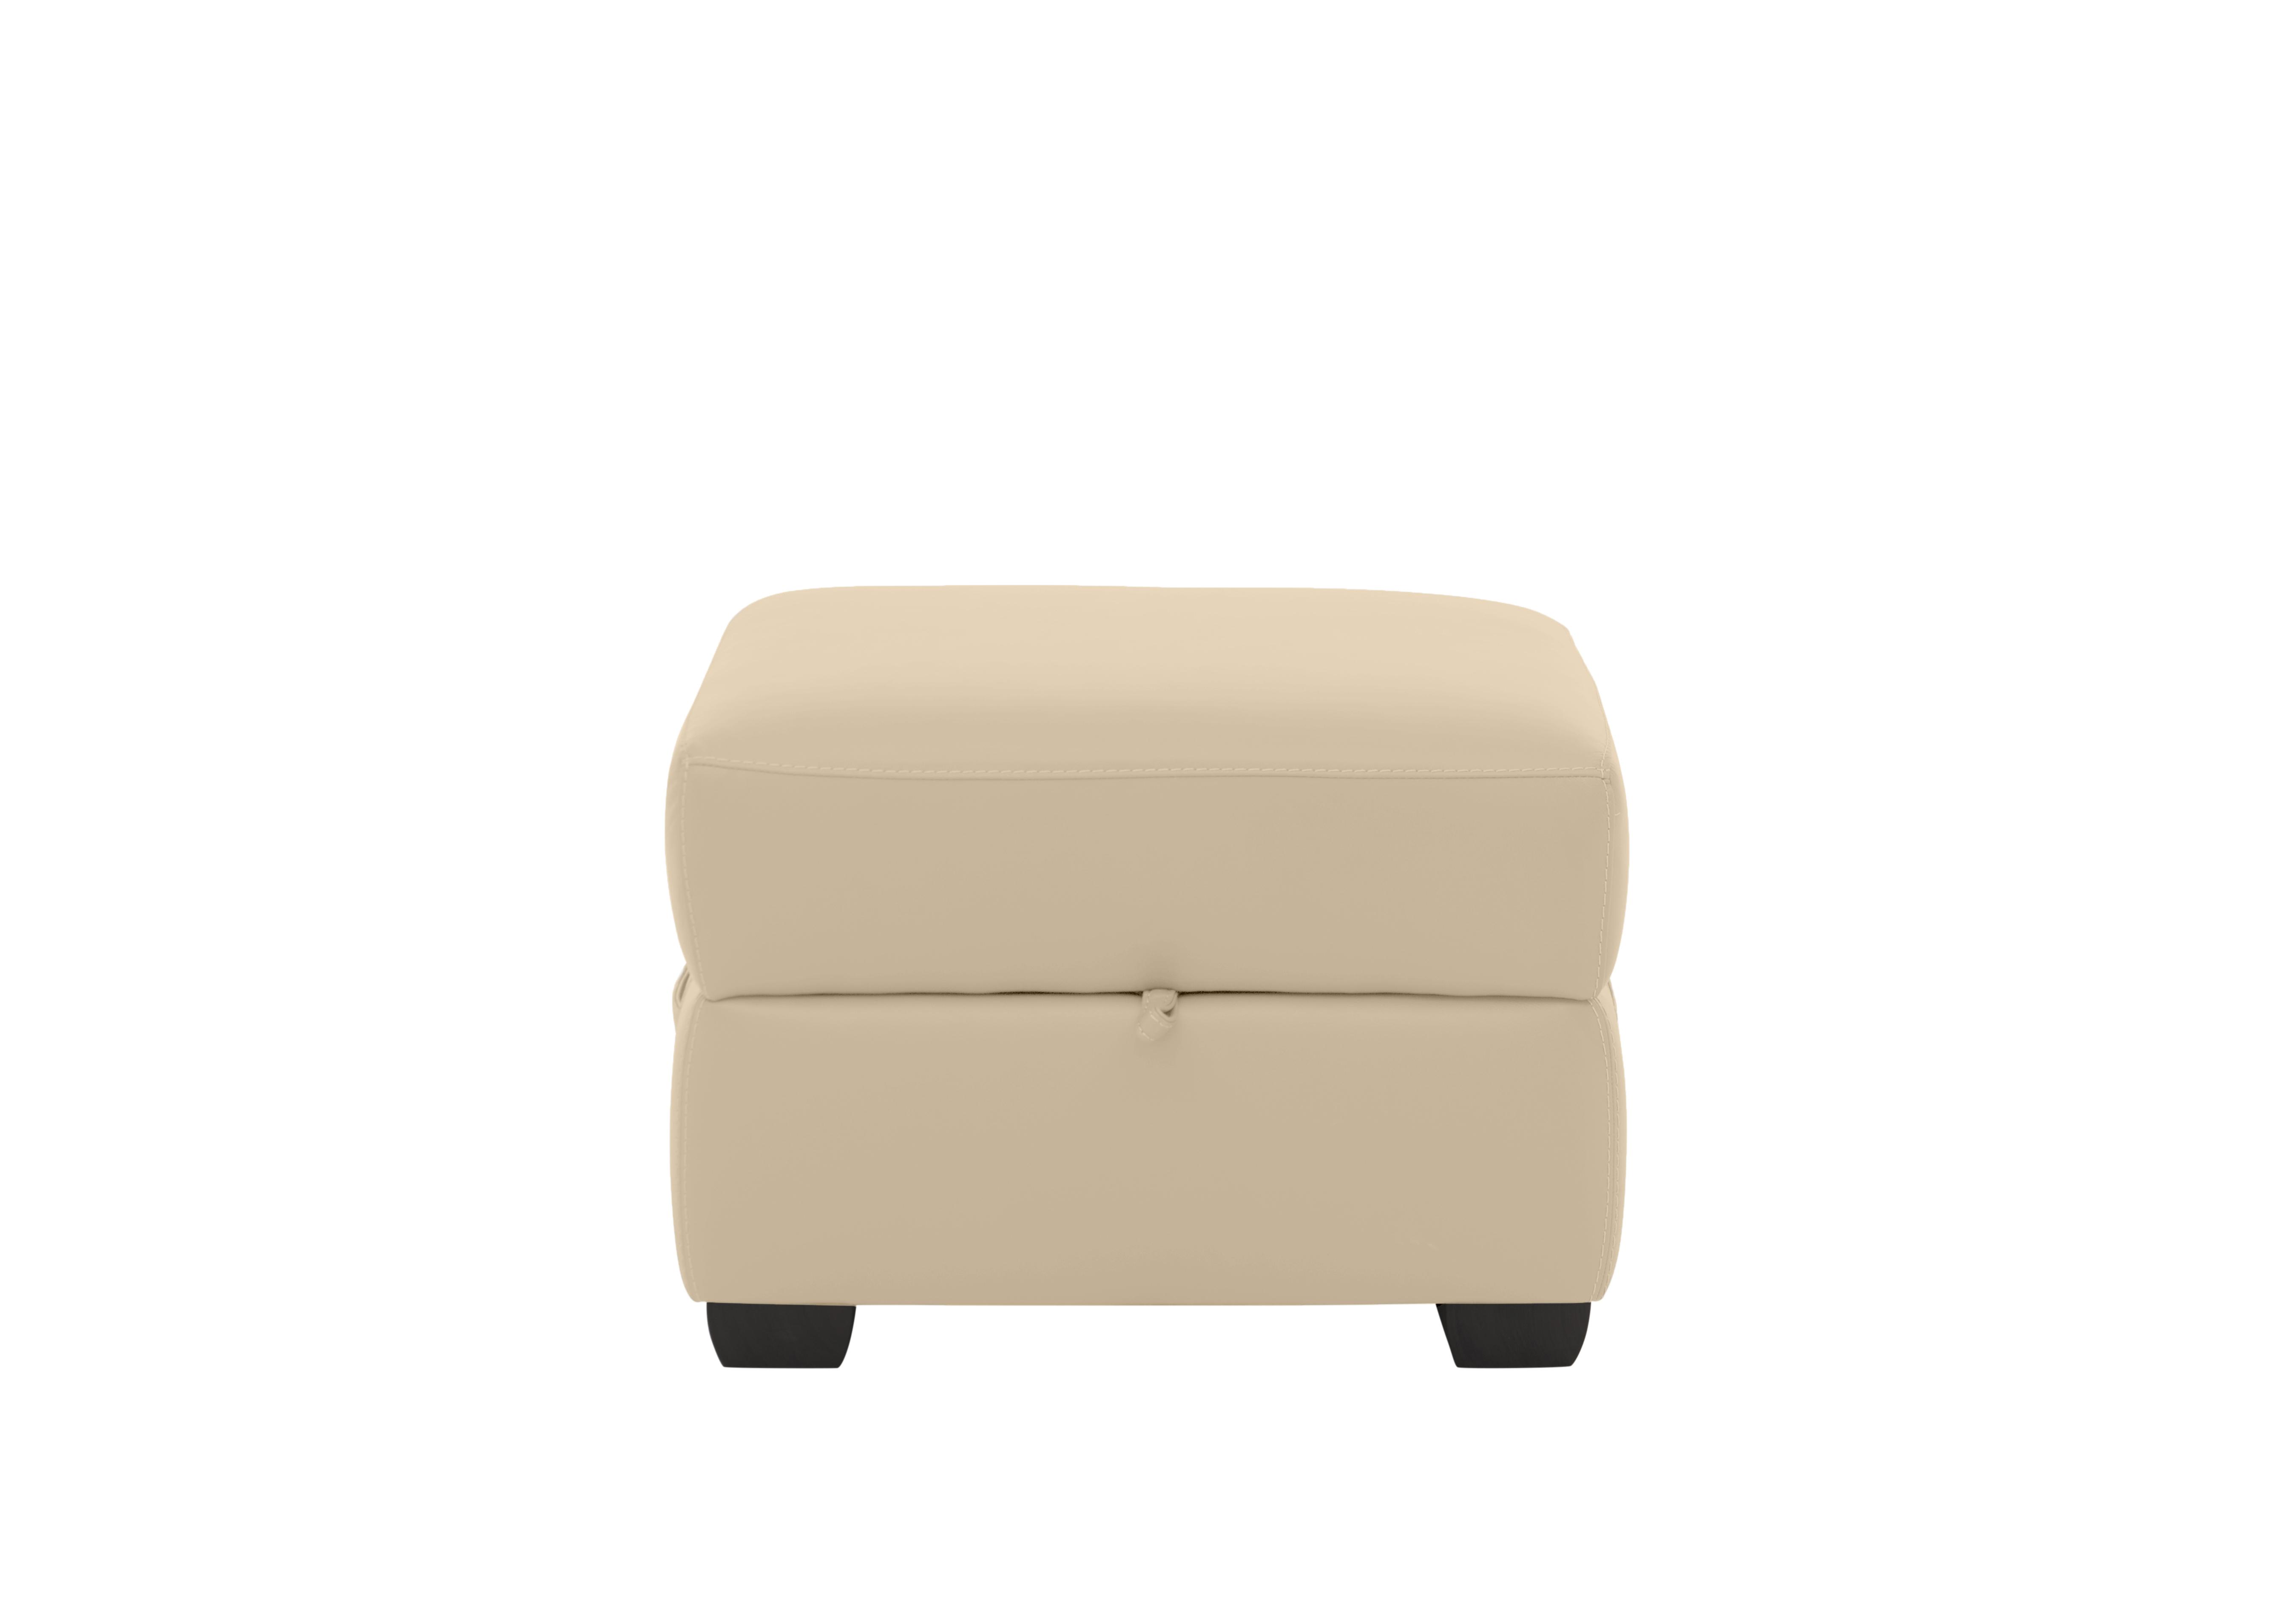 Missouri Leather Storage Footstool in Bv-862c Bisque on Furniture Village